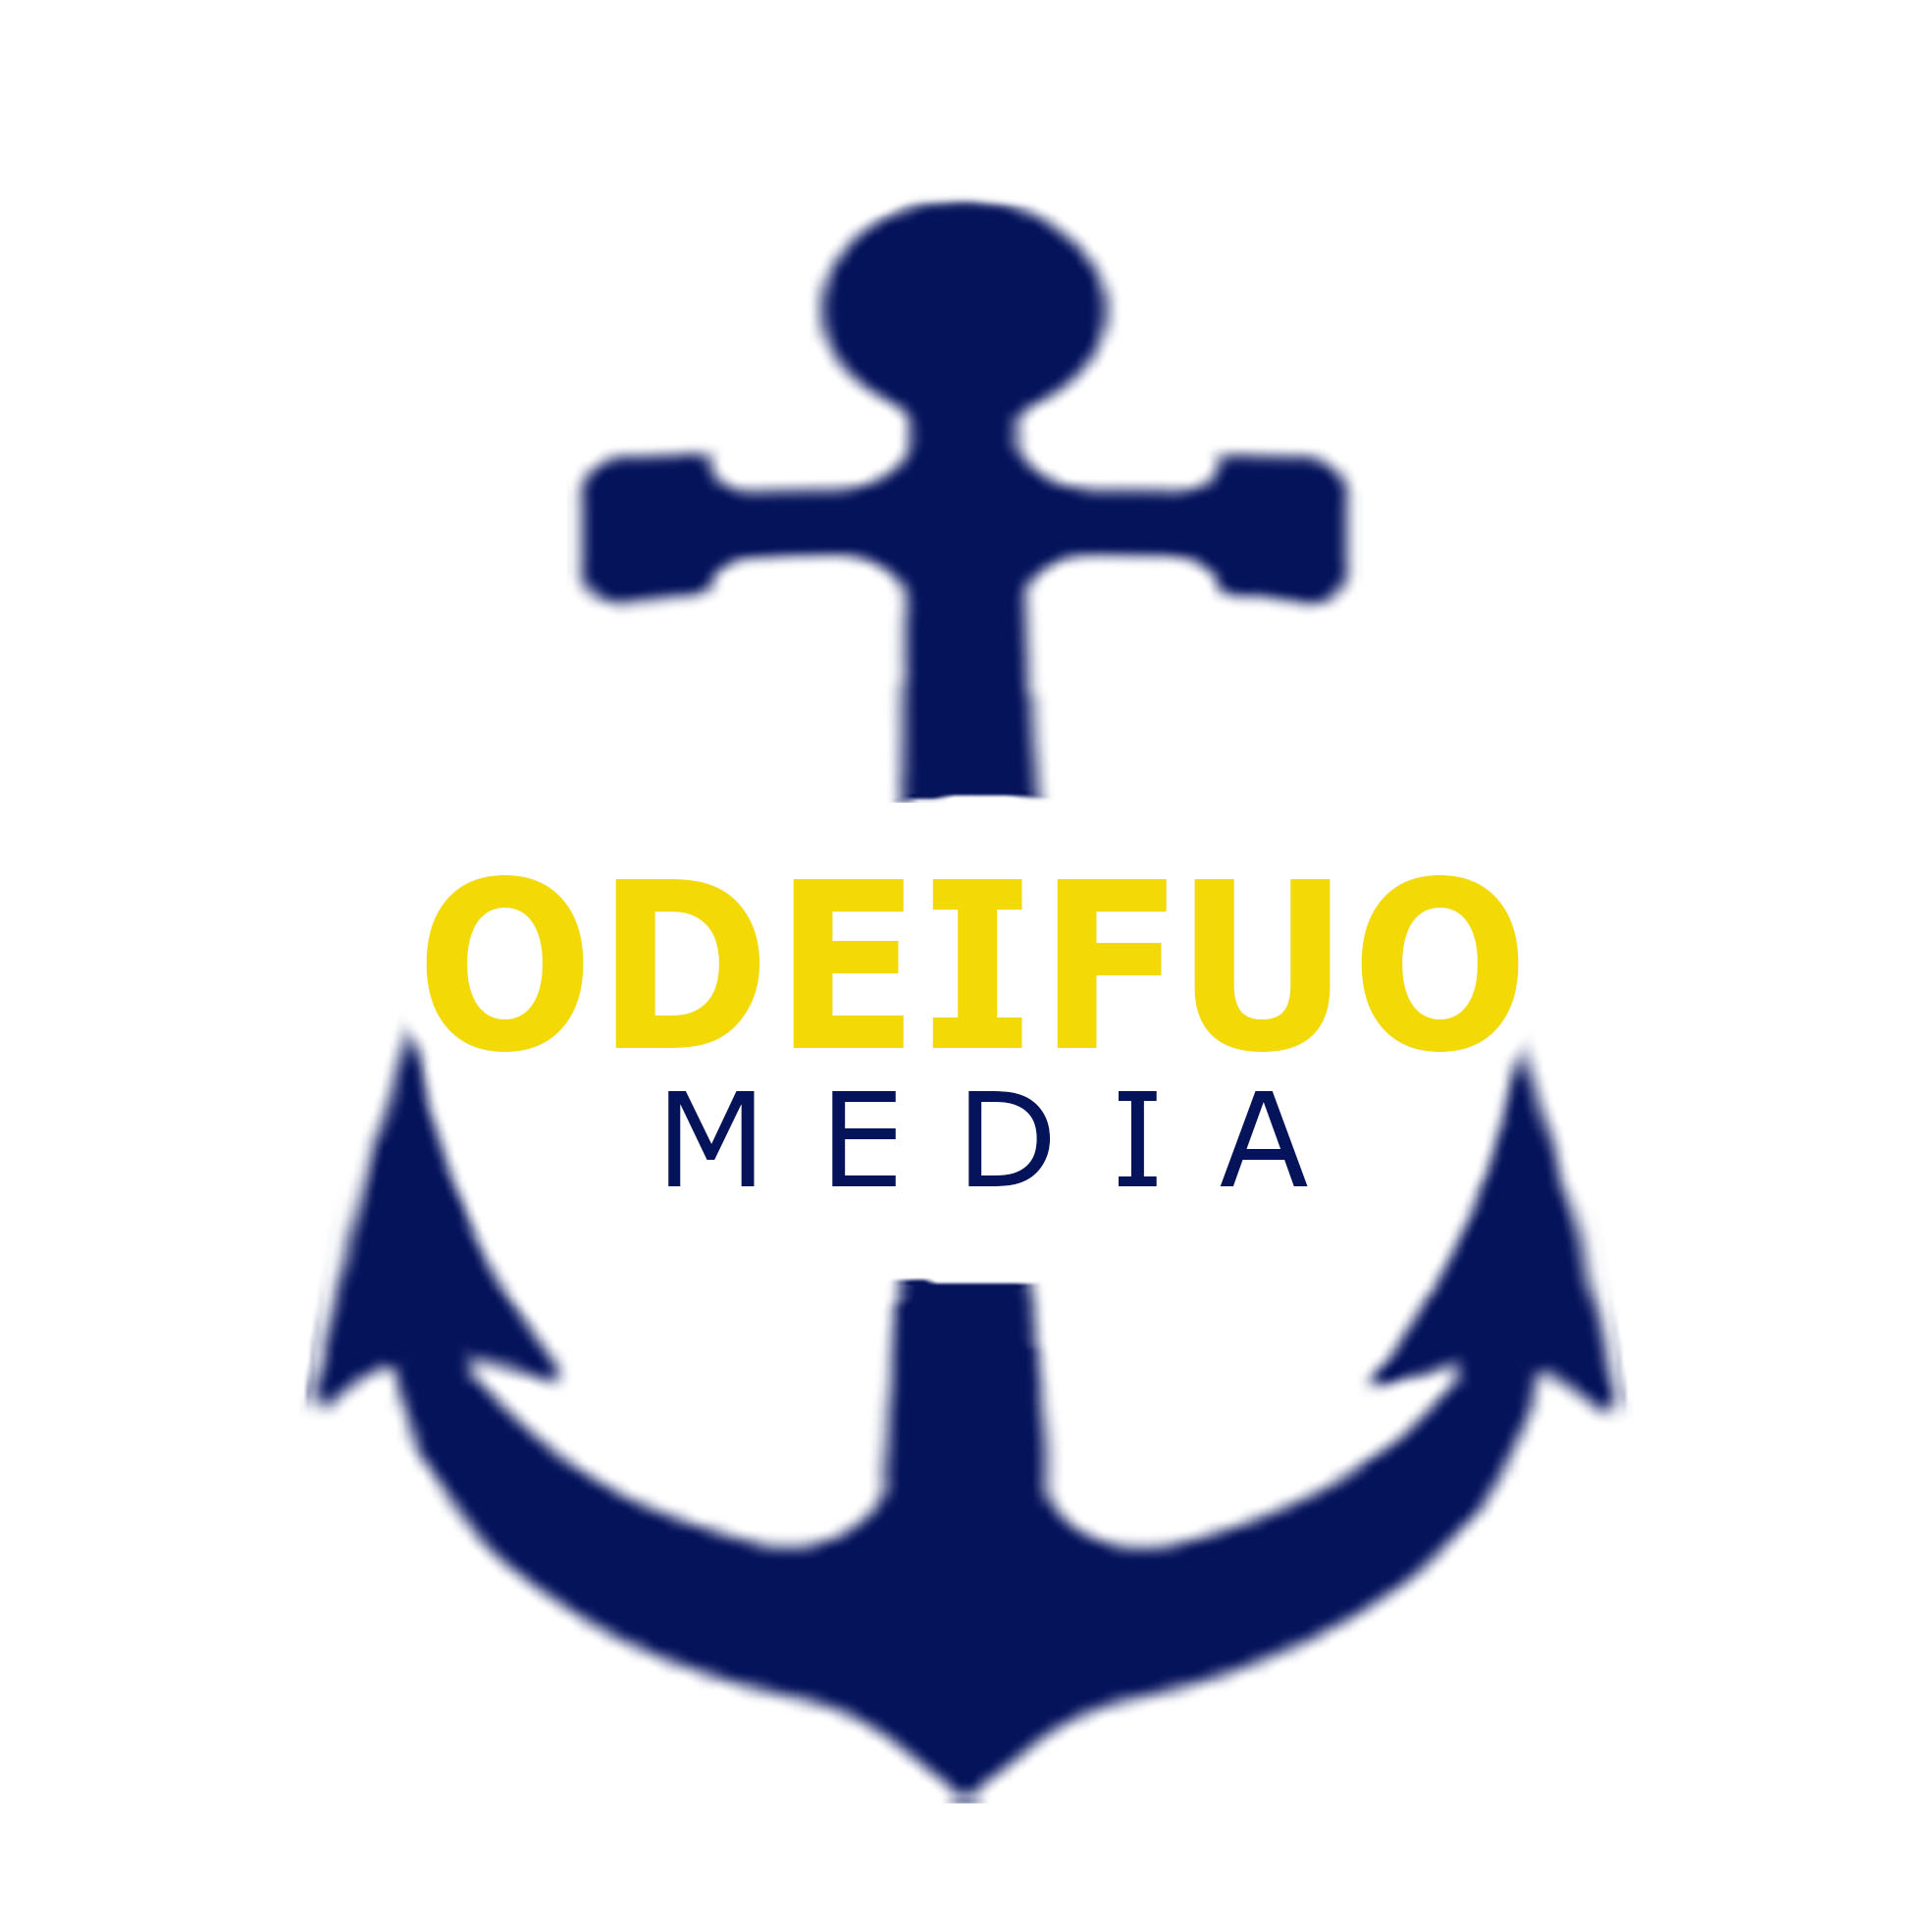 OdeifuoMedia